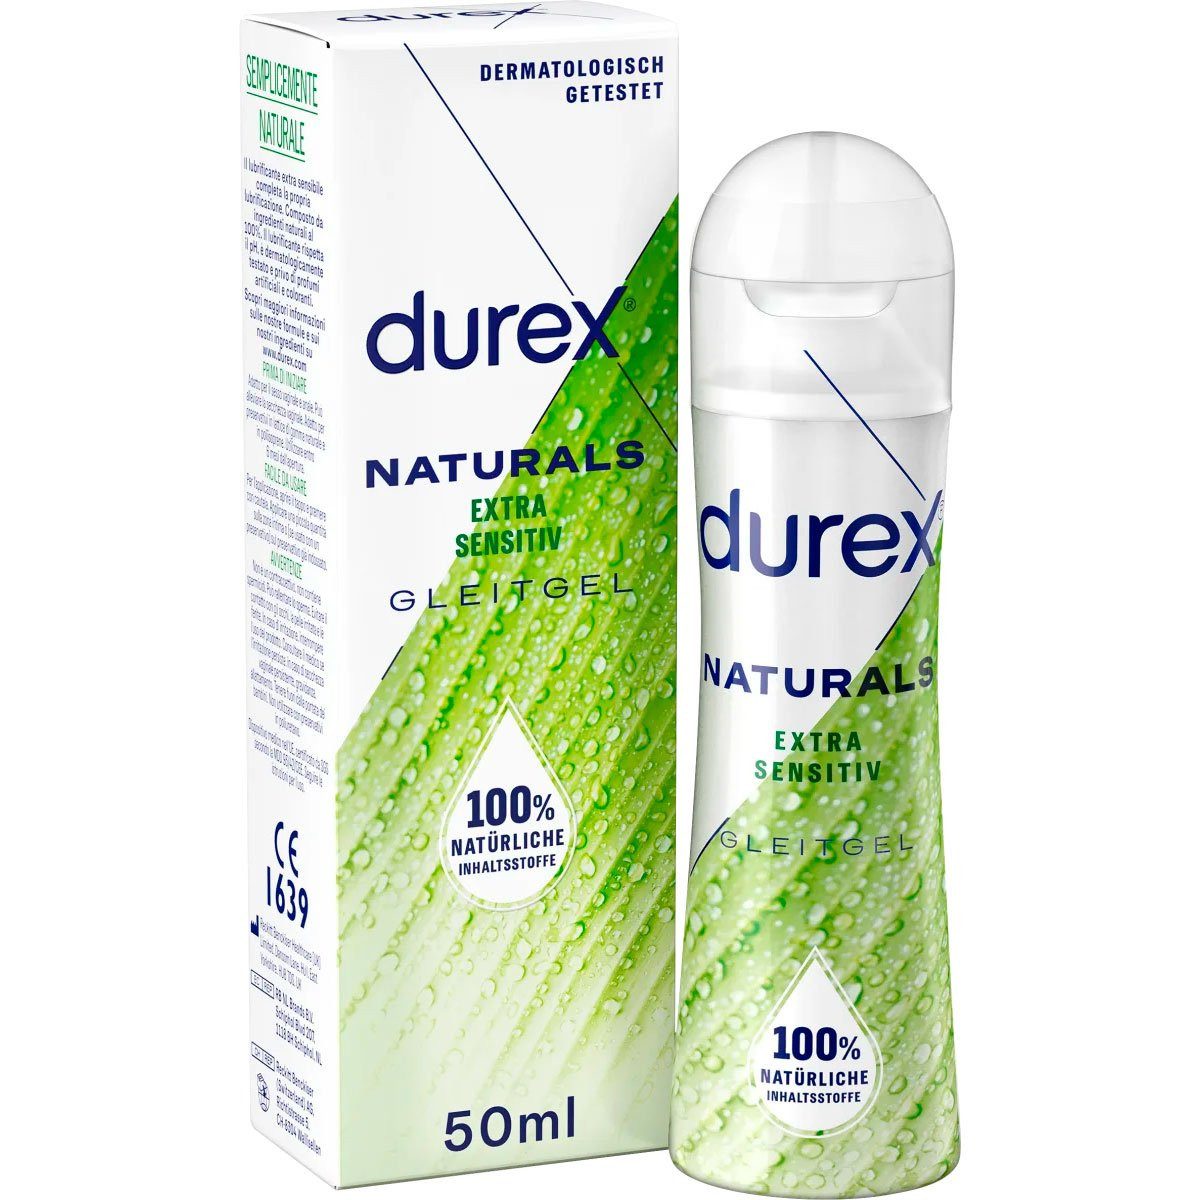 durex Gleitgel Naturals - Extra sensitiv, 1-tlg., 100% natürliche Inhaltsstoffe (50 ml)